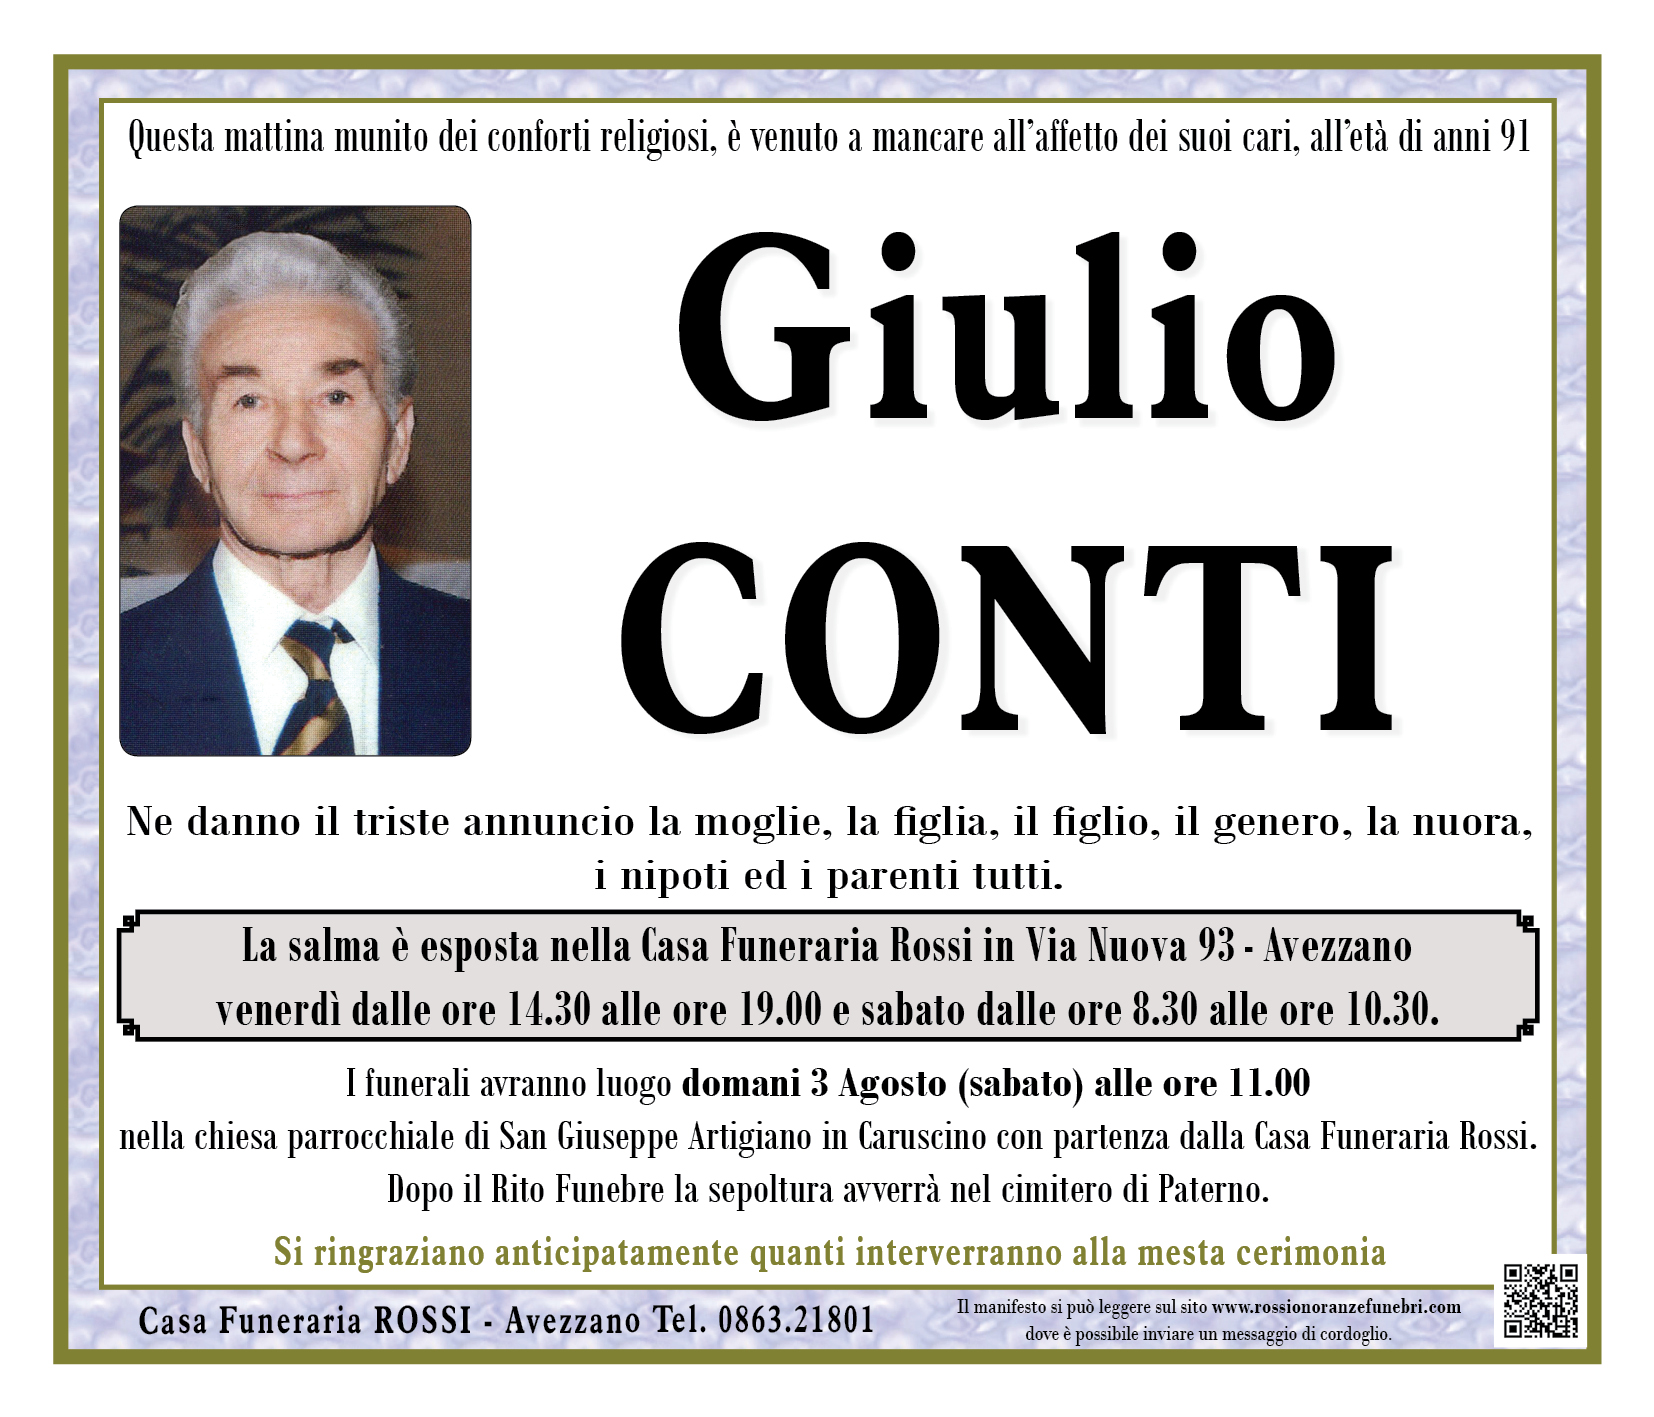 Giulio Conti